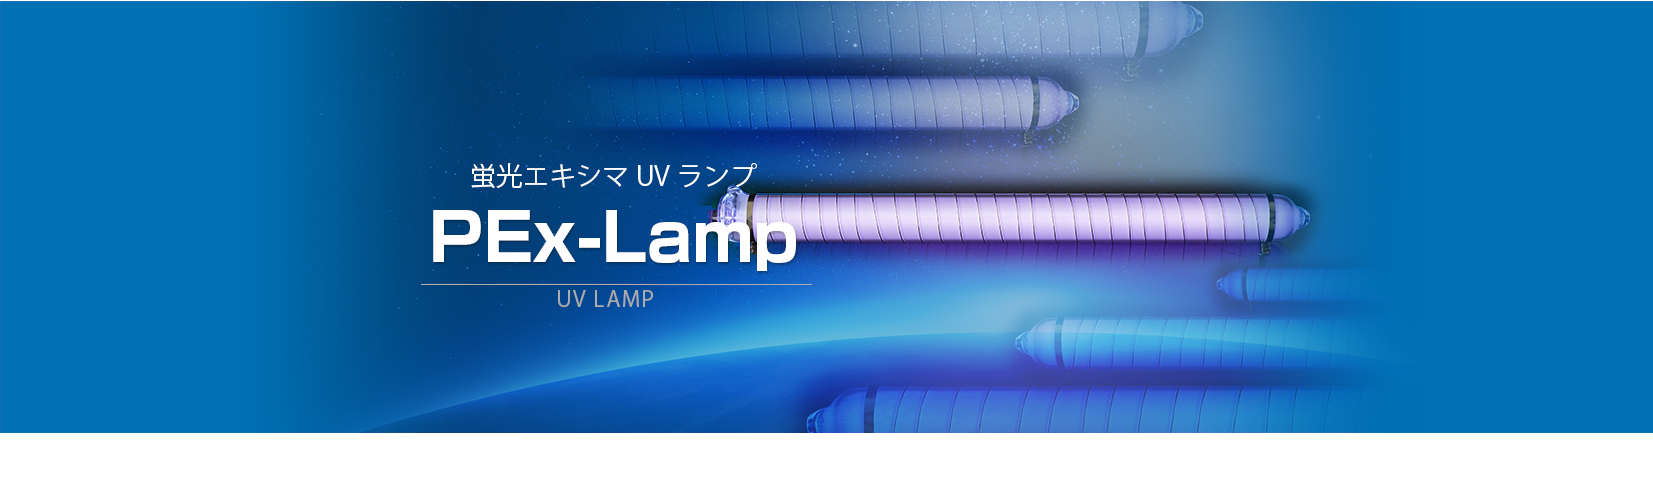 bg lamp-pex 01